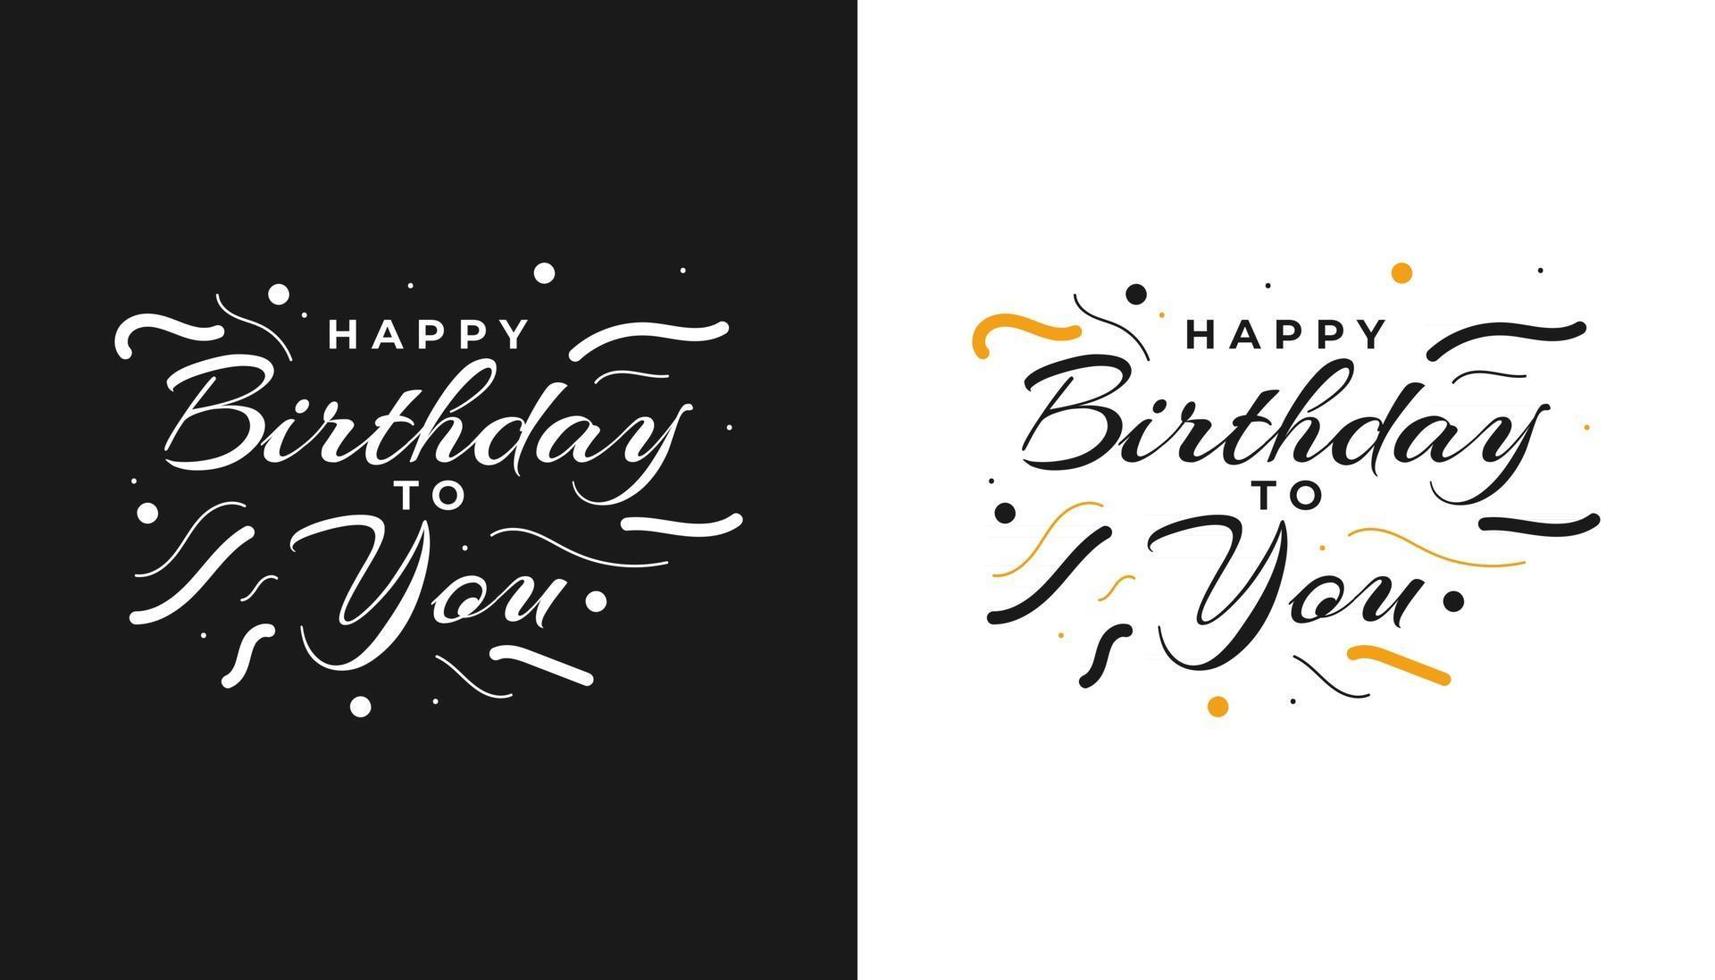 tarjeta de feliz cumpleaños o banner texto de feliz cumpleaños letras caligrafía con adornos hermoso cartel de saludo con caligrafía vector